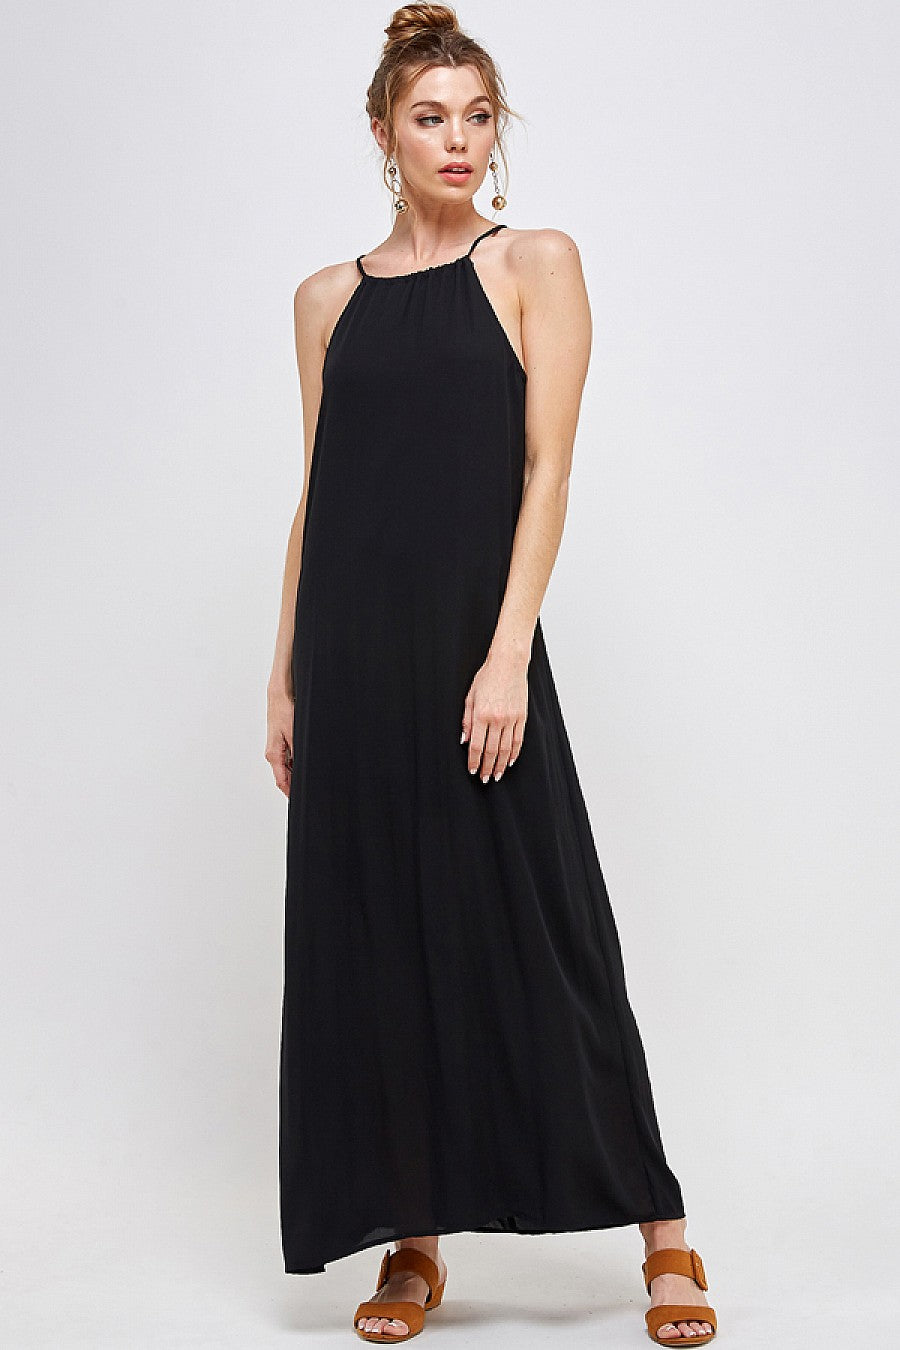 Formal Dresses Long Halter Neck Dress Black 